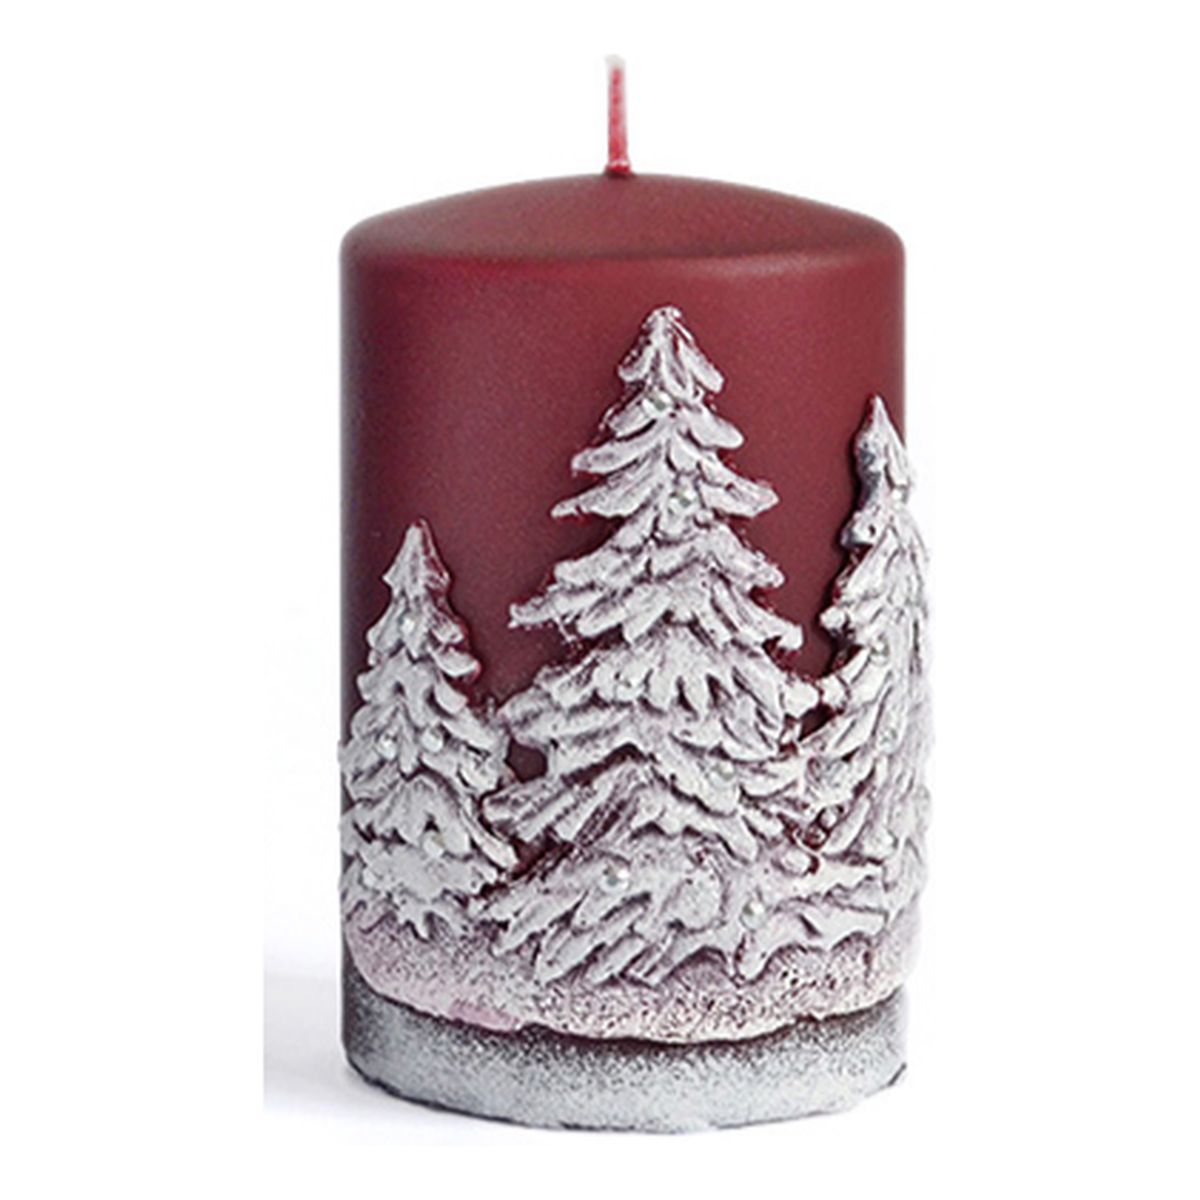 Artman Candles Świeca Zimowe Drzewka walec średni Bordo